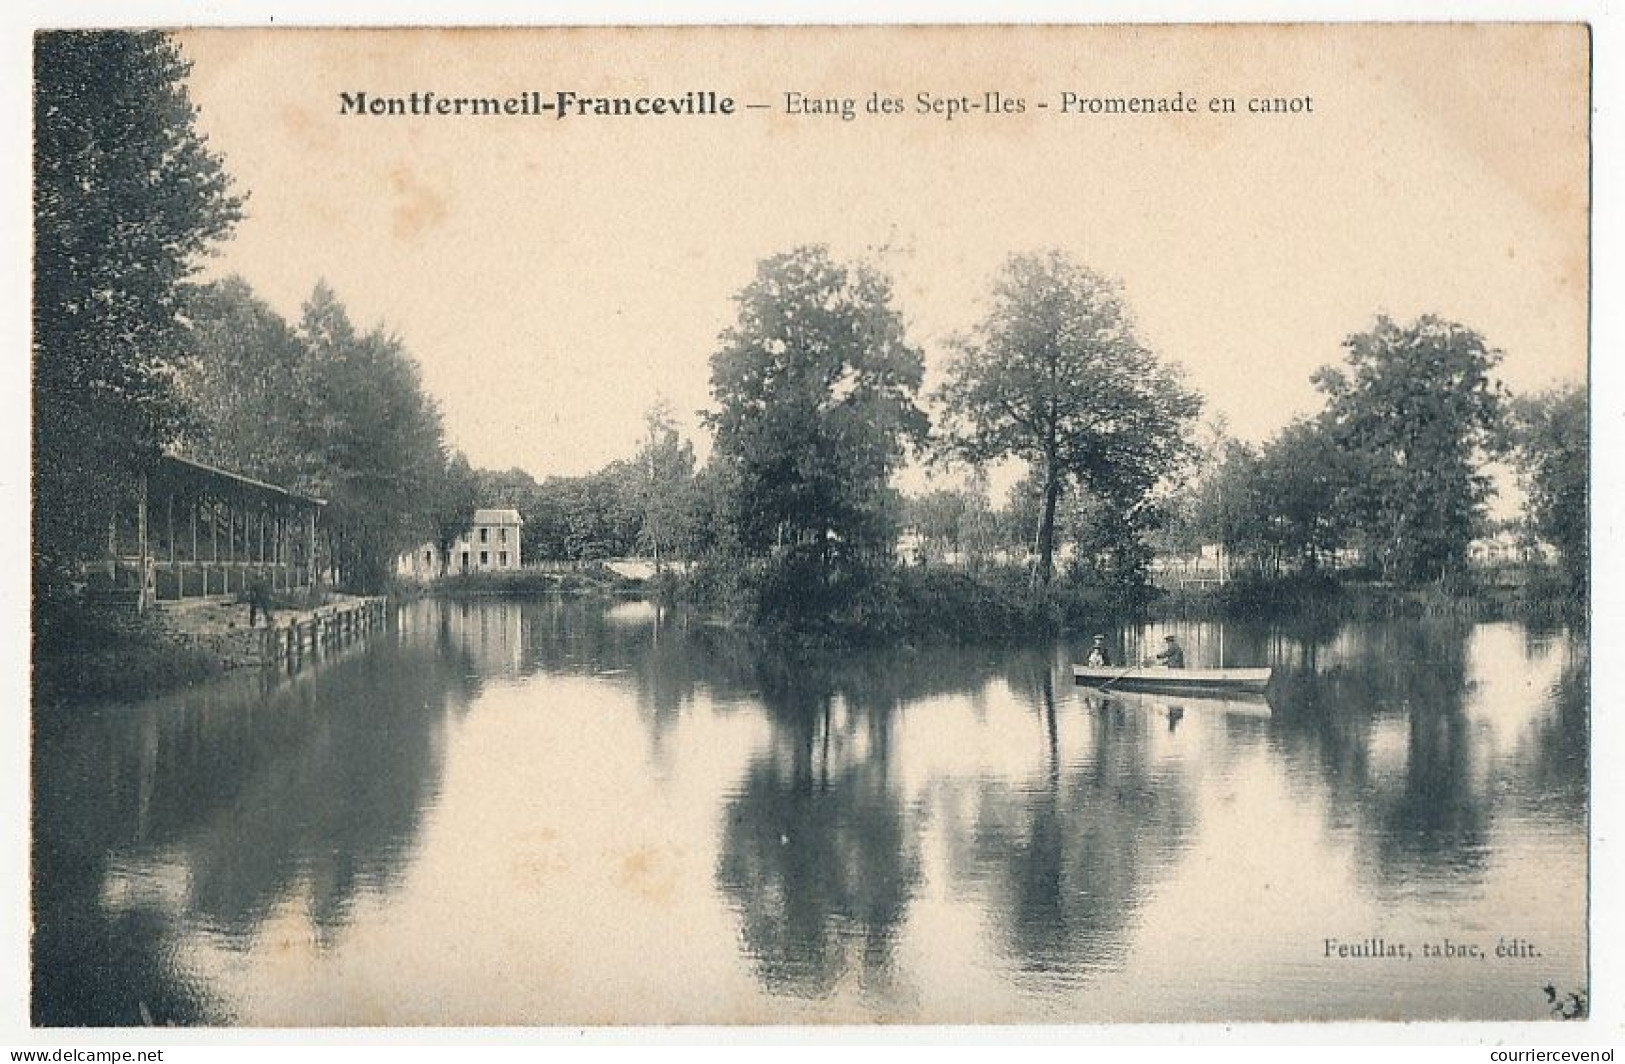 12 CPA - MONTFERMEIL (Seine et Oise) - 12 cartes diverses, sans écriture, état TB / TTB